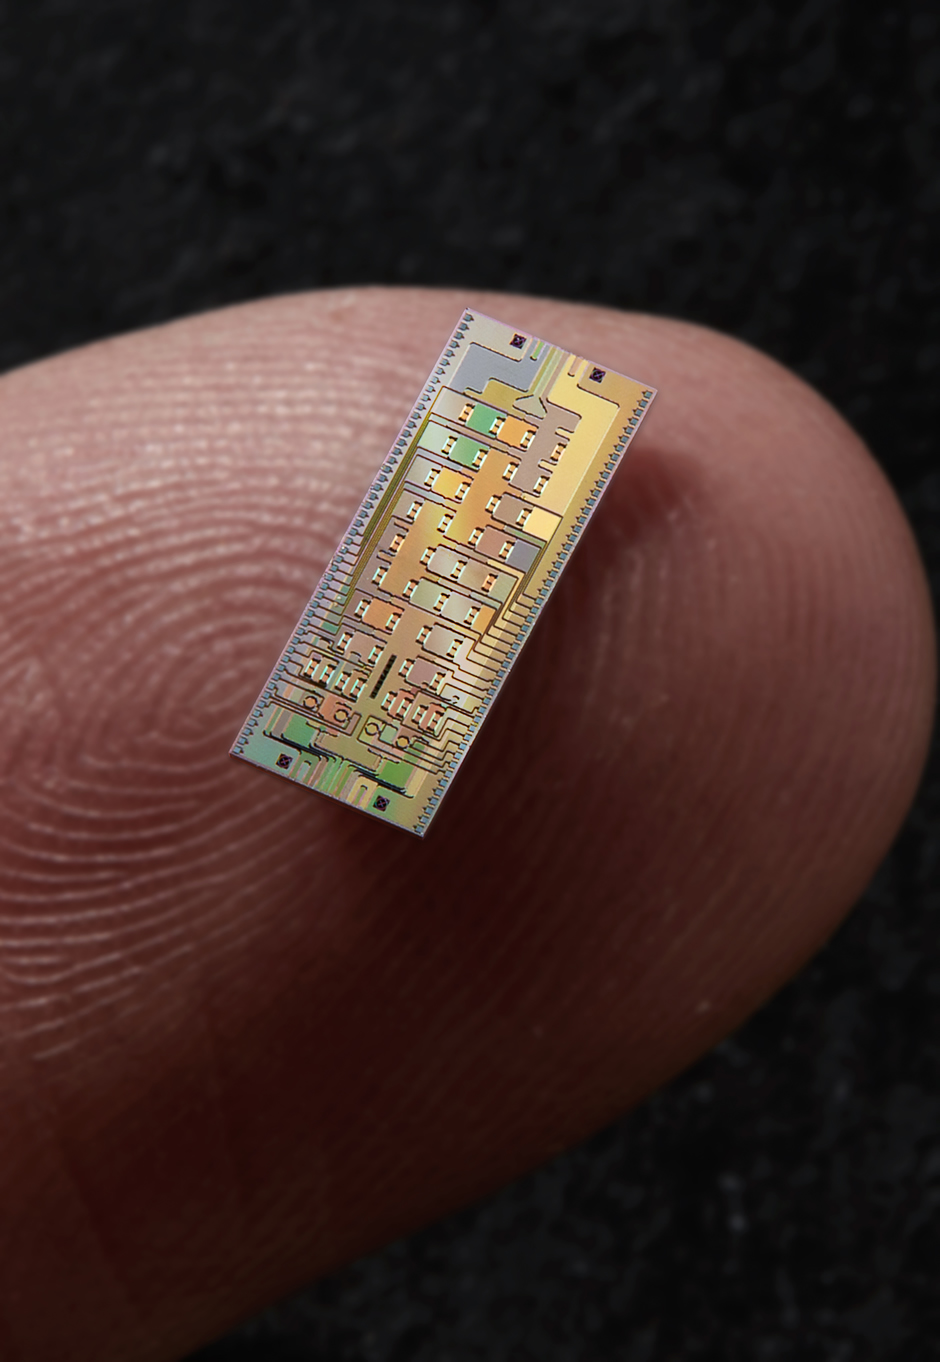 A quantum microchip